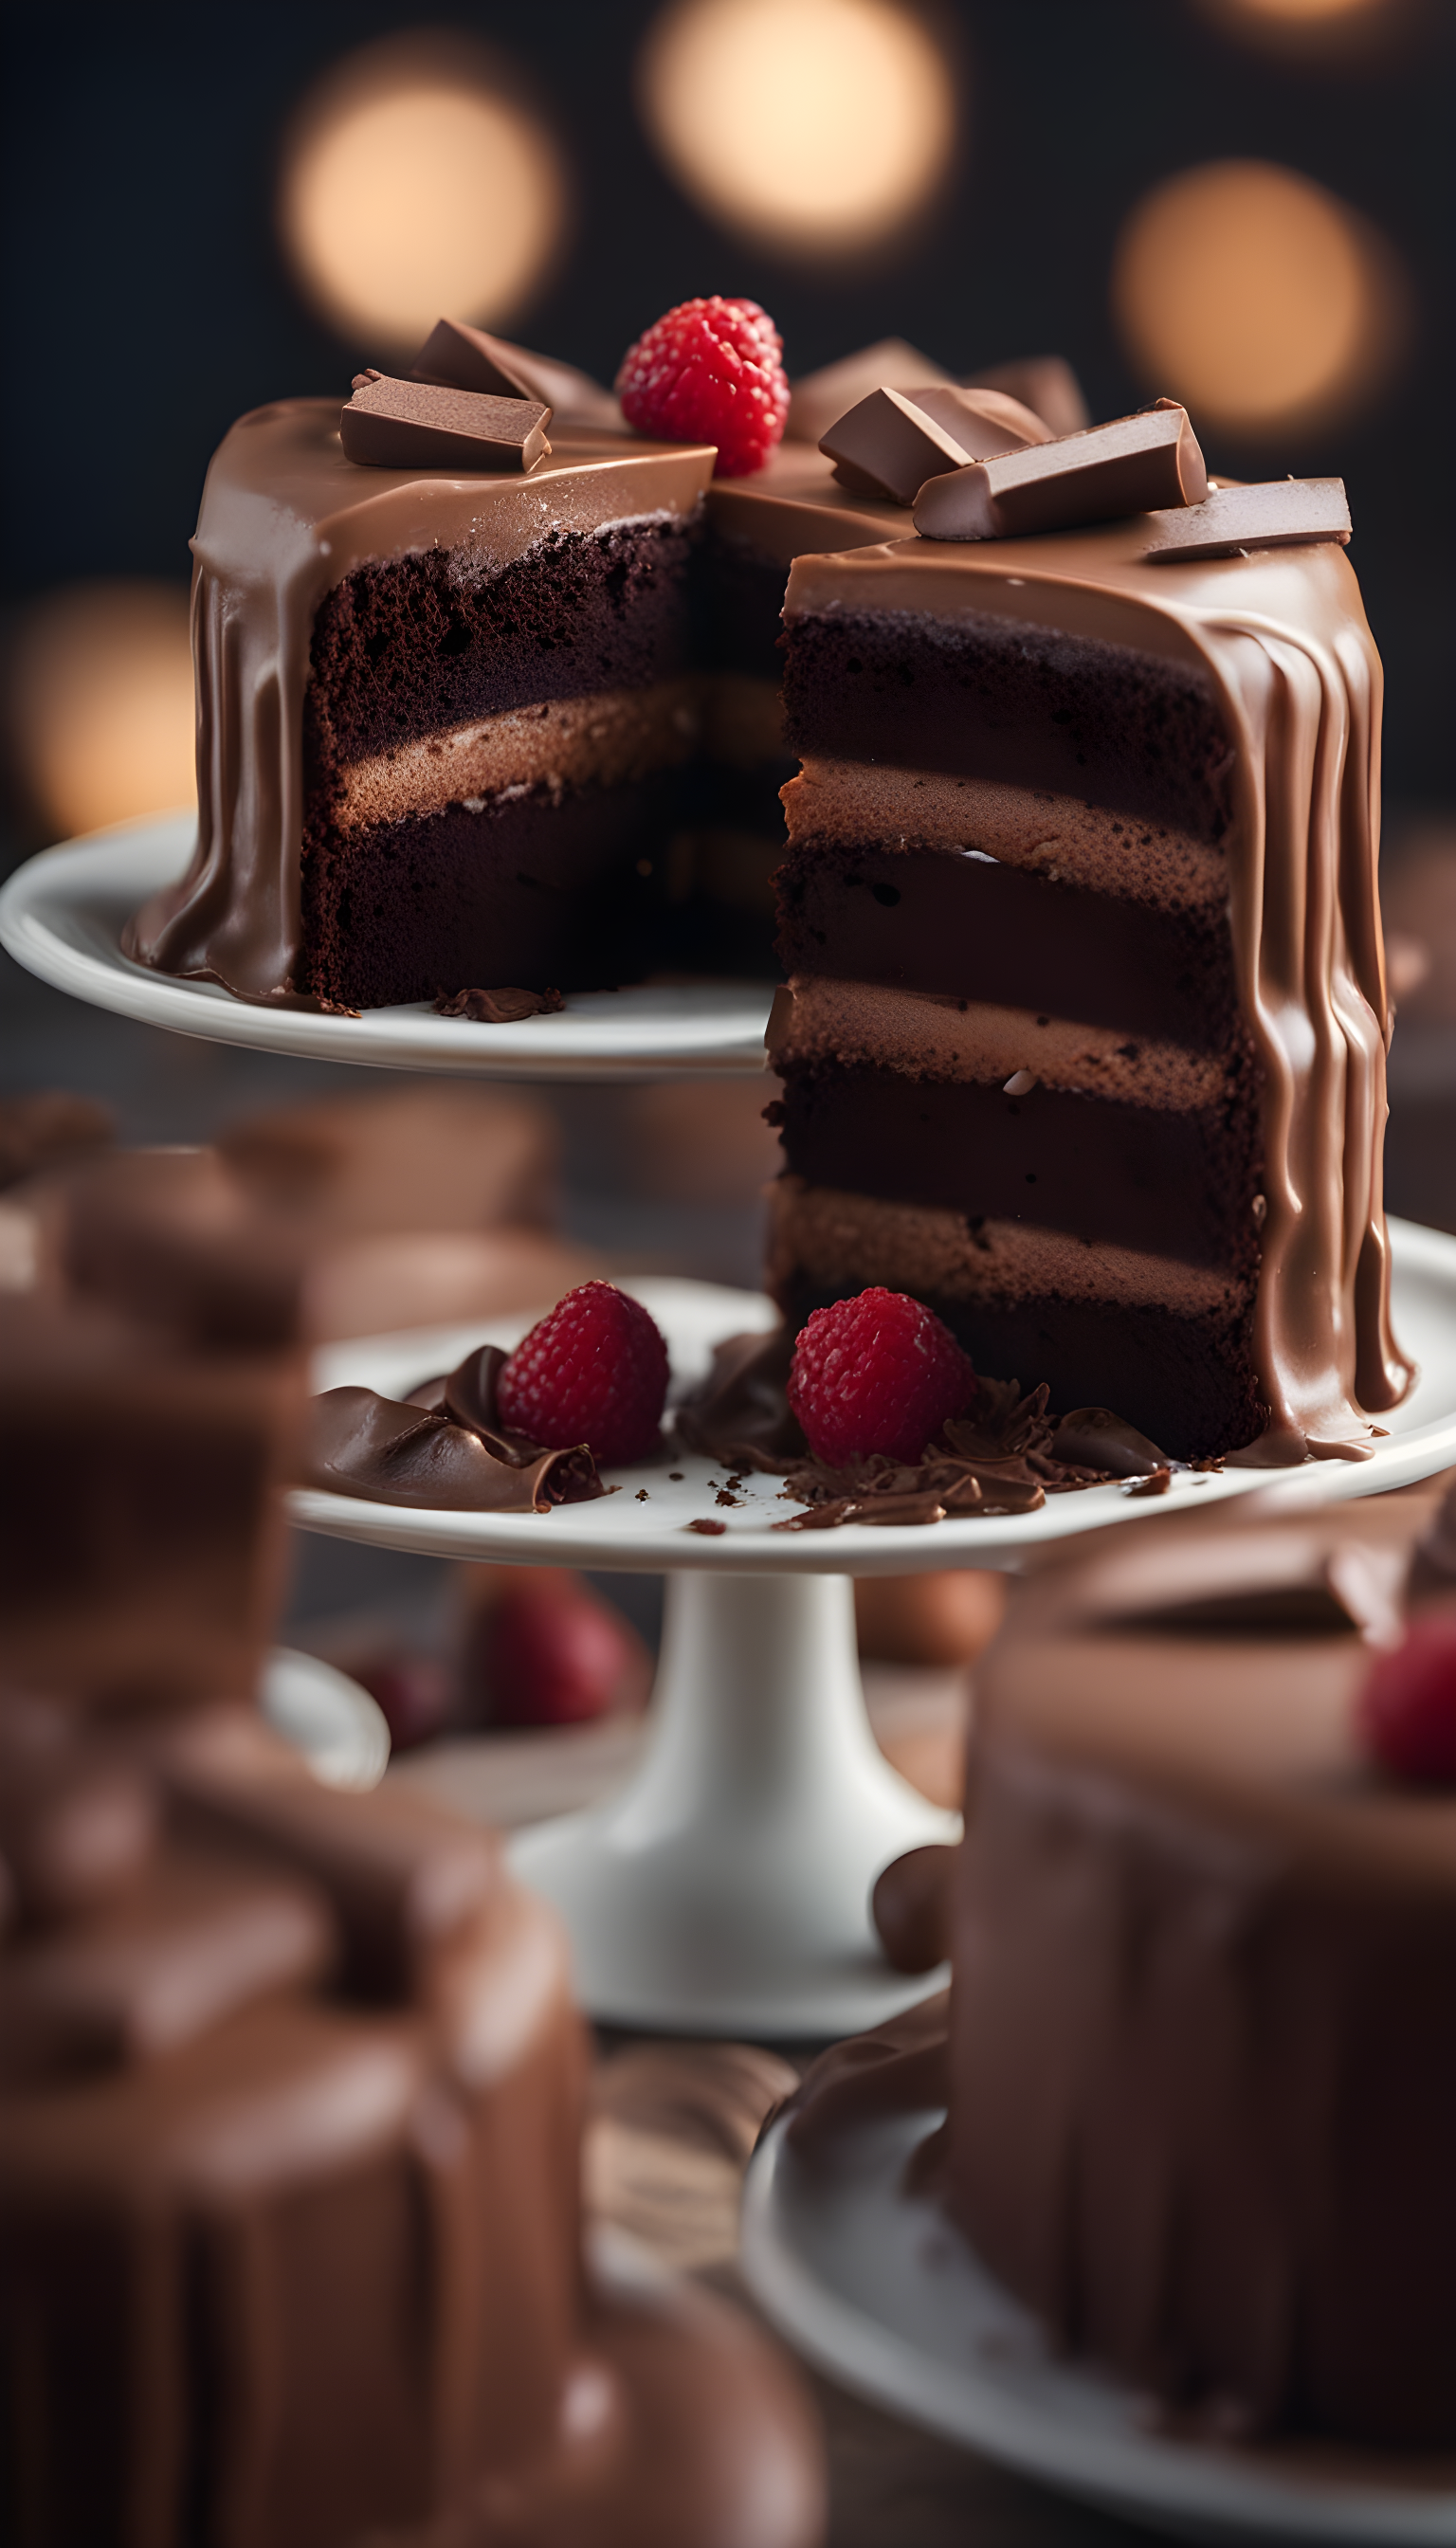 Grand concours de gâteaux au chocolat